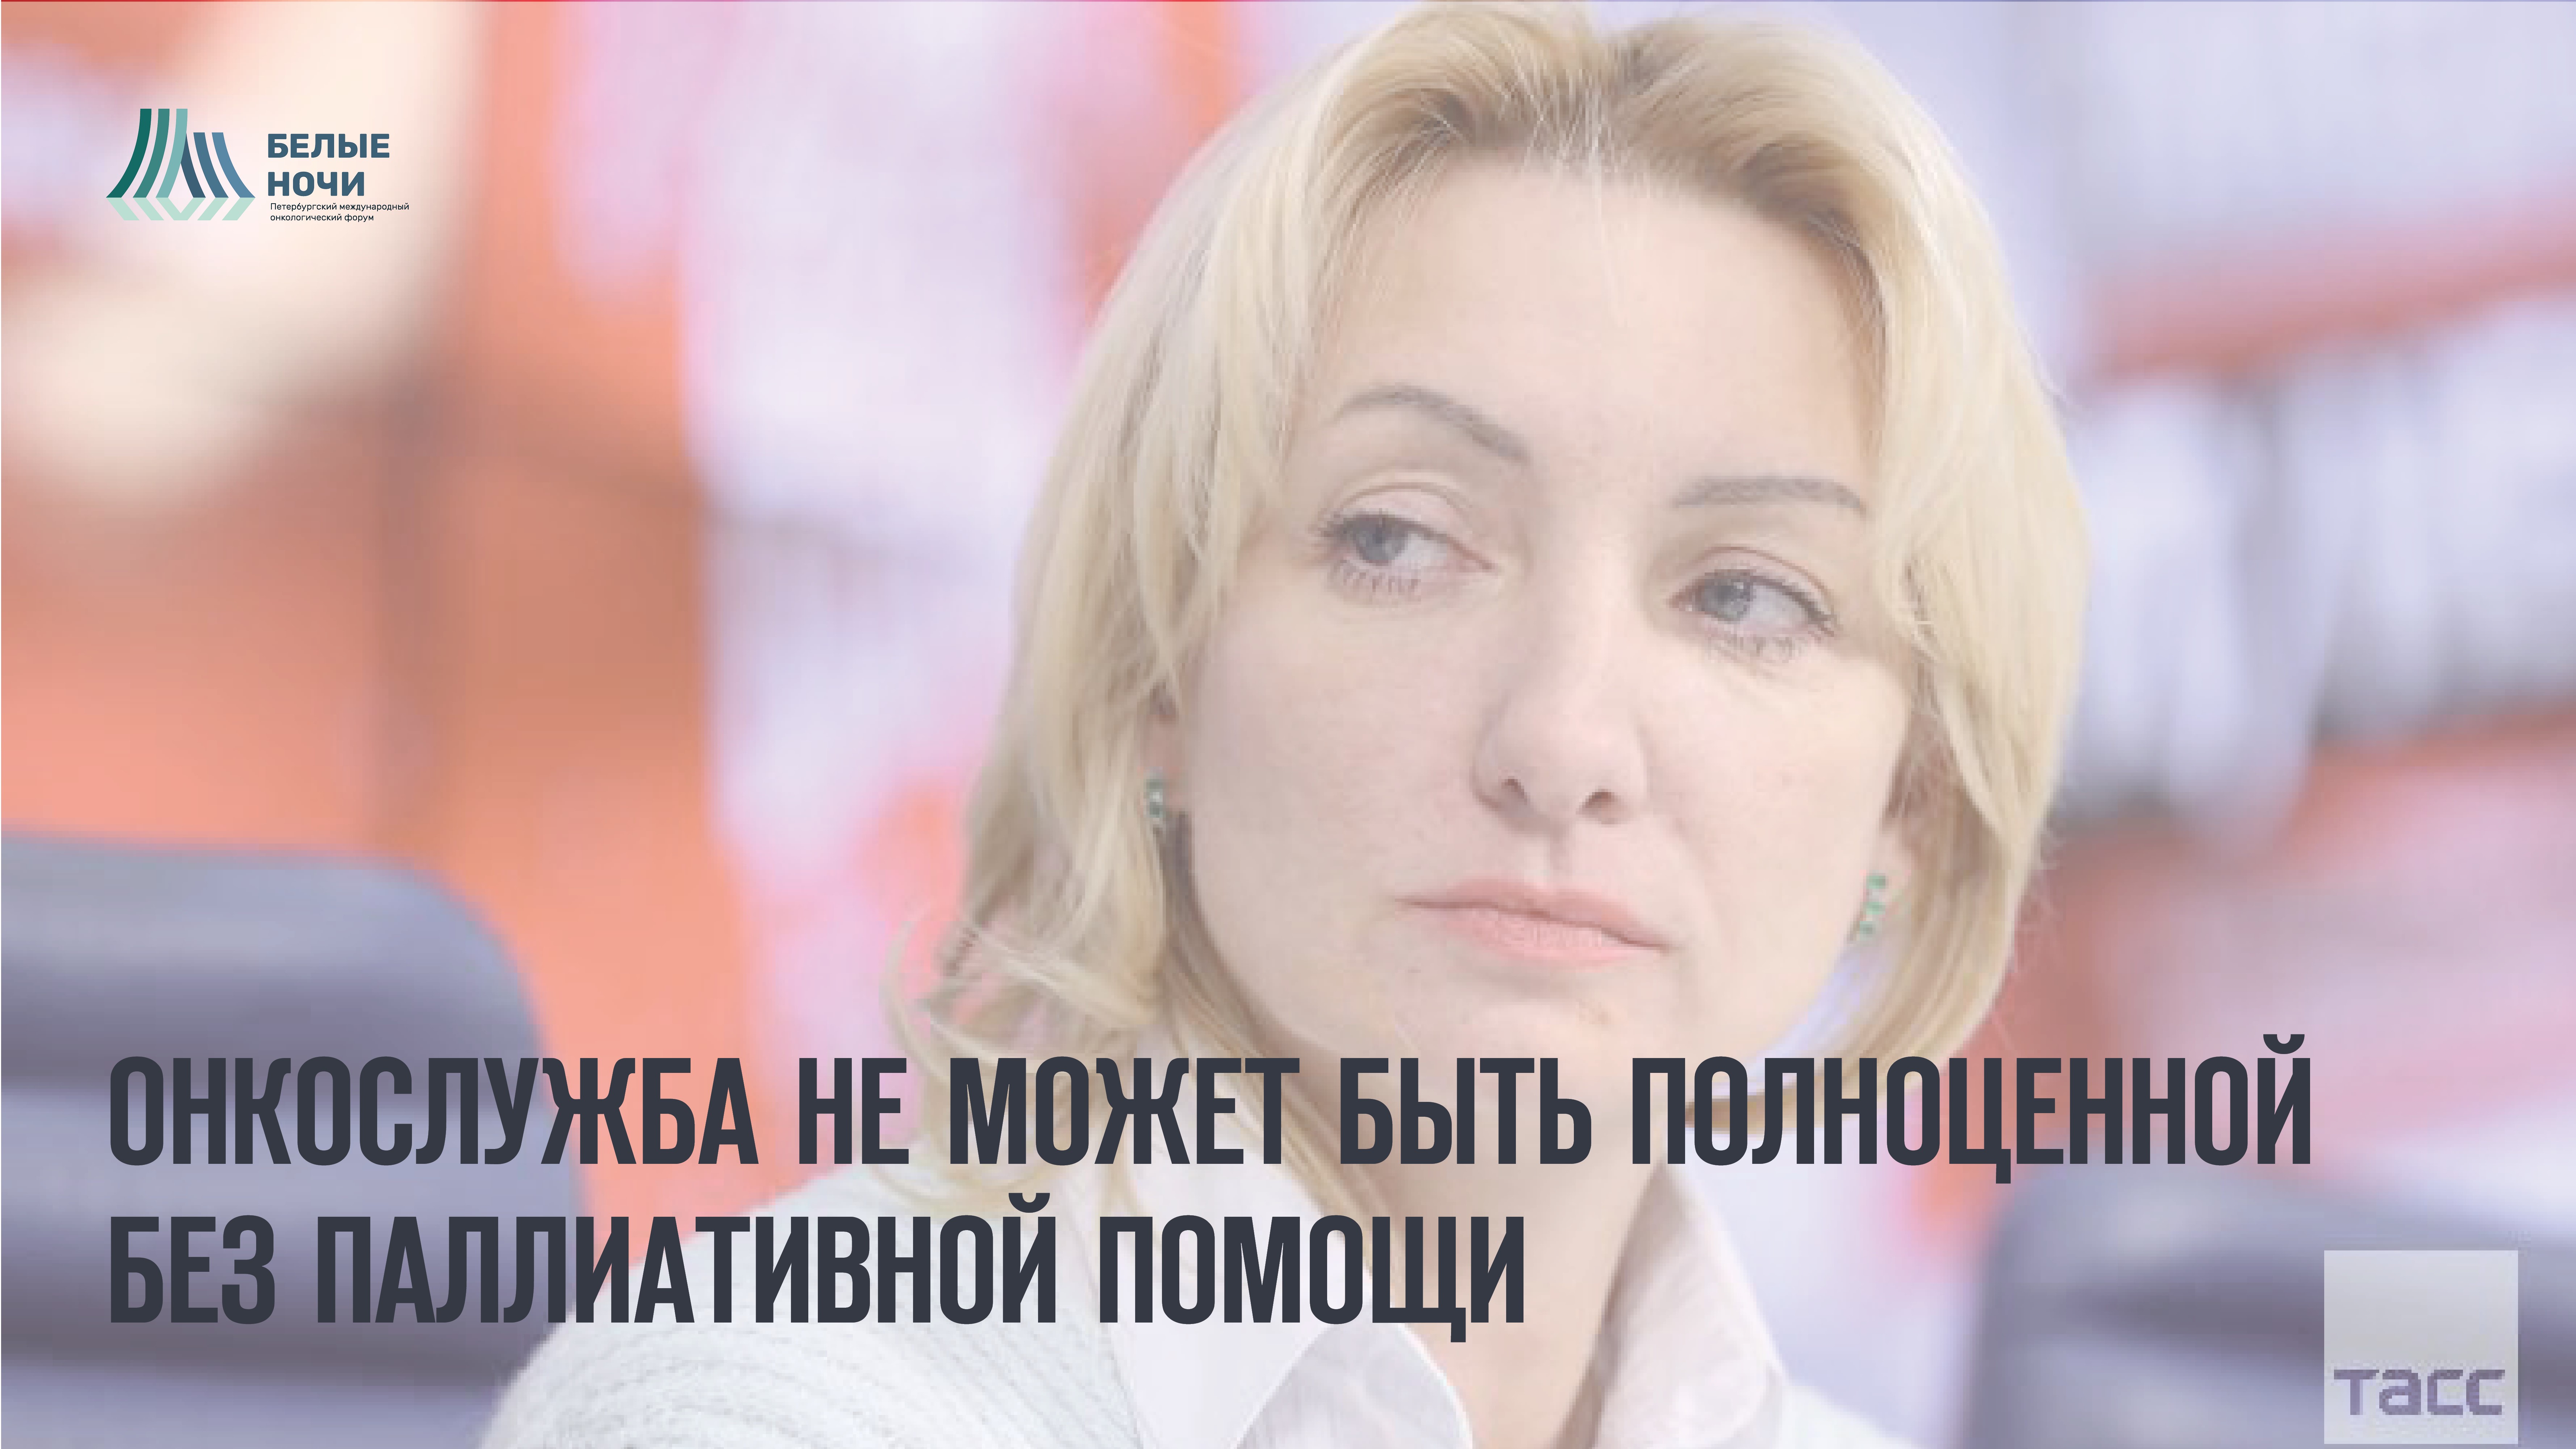 Диана Владимировна Невзорова: «Как бы мы не развивали онкослужбу, без совершенствования паллиативной помощи она не будет полноценной» 